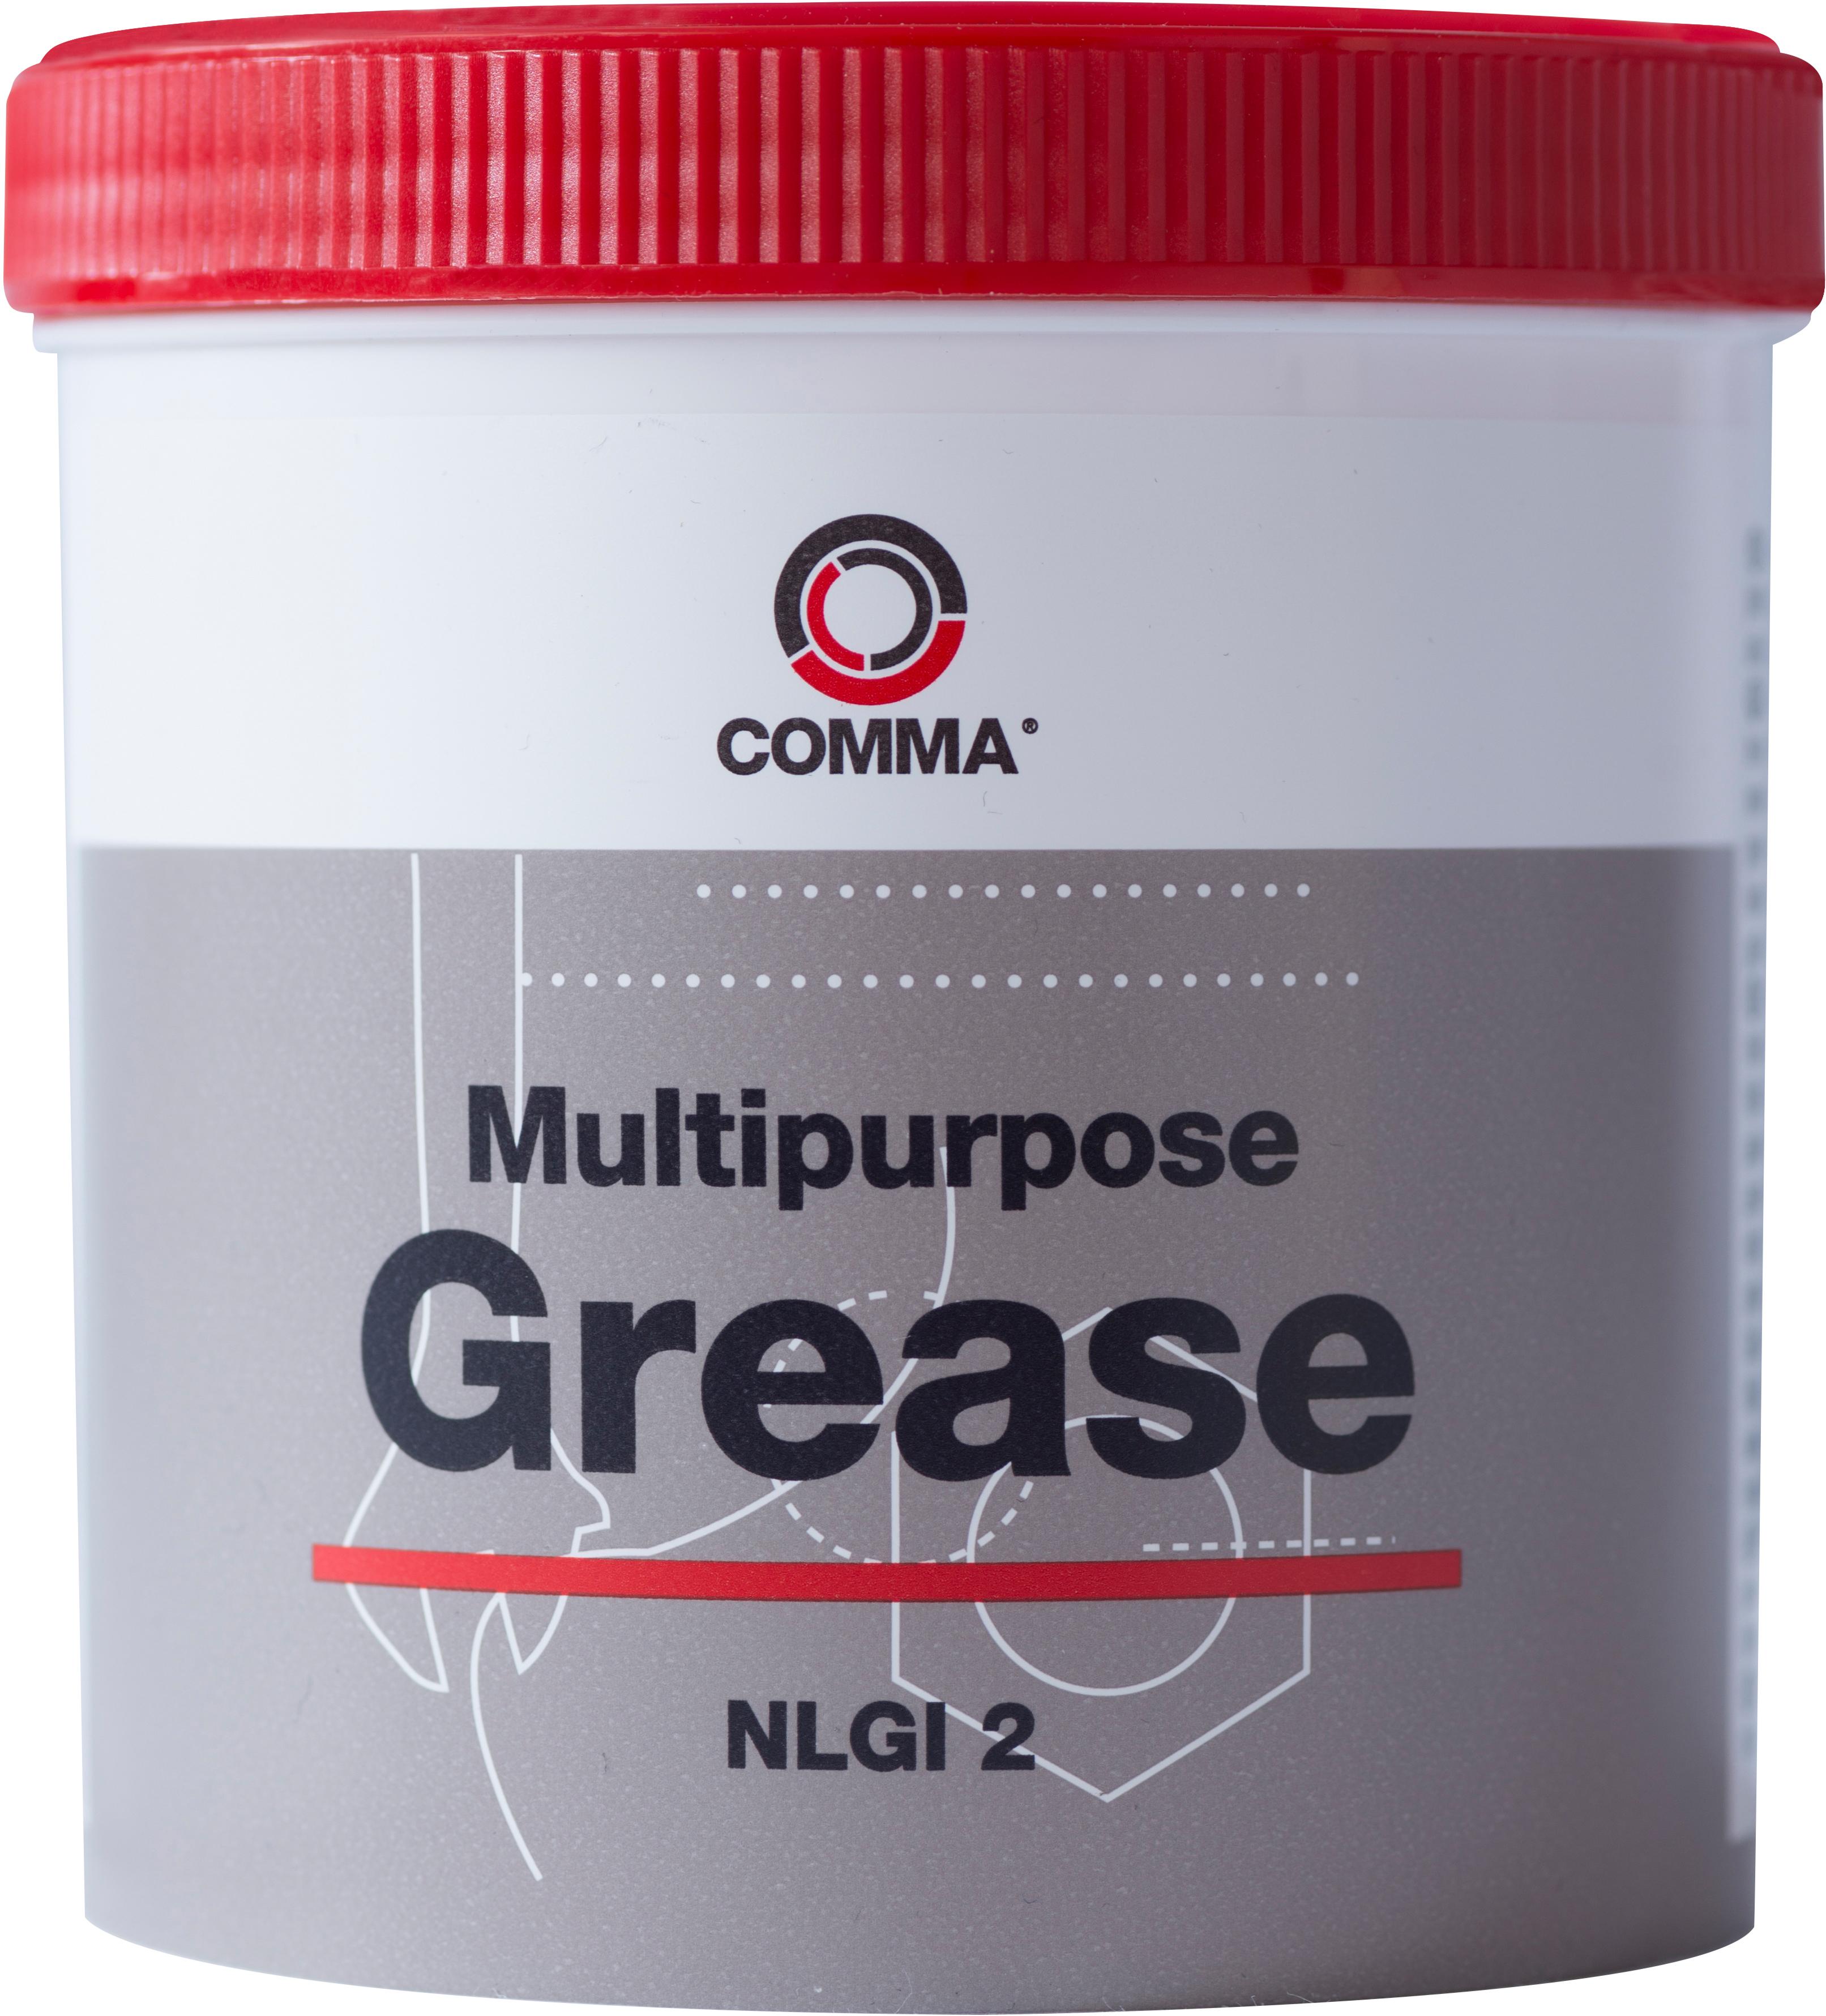 Comma Multi Purpose Grease 500G